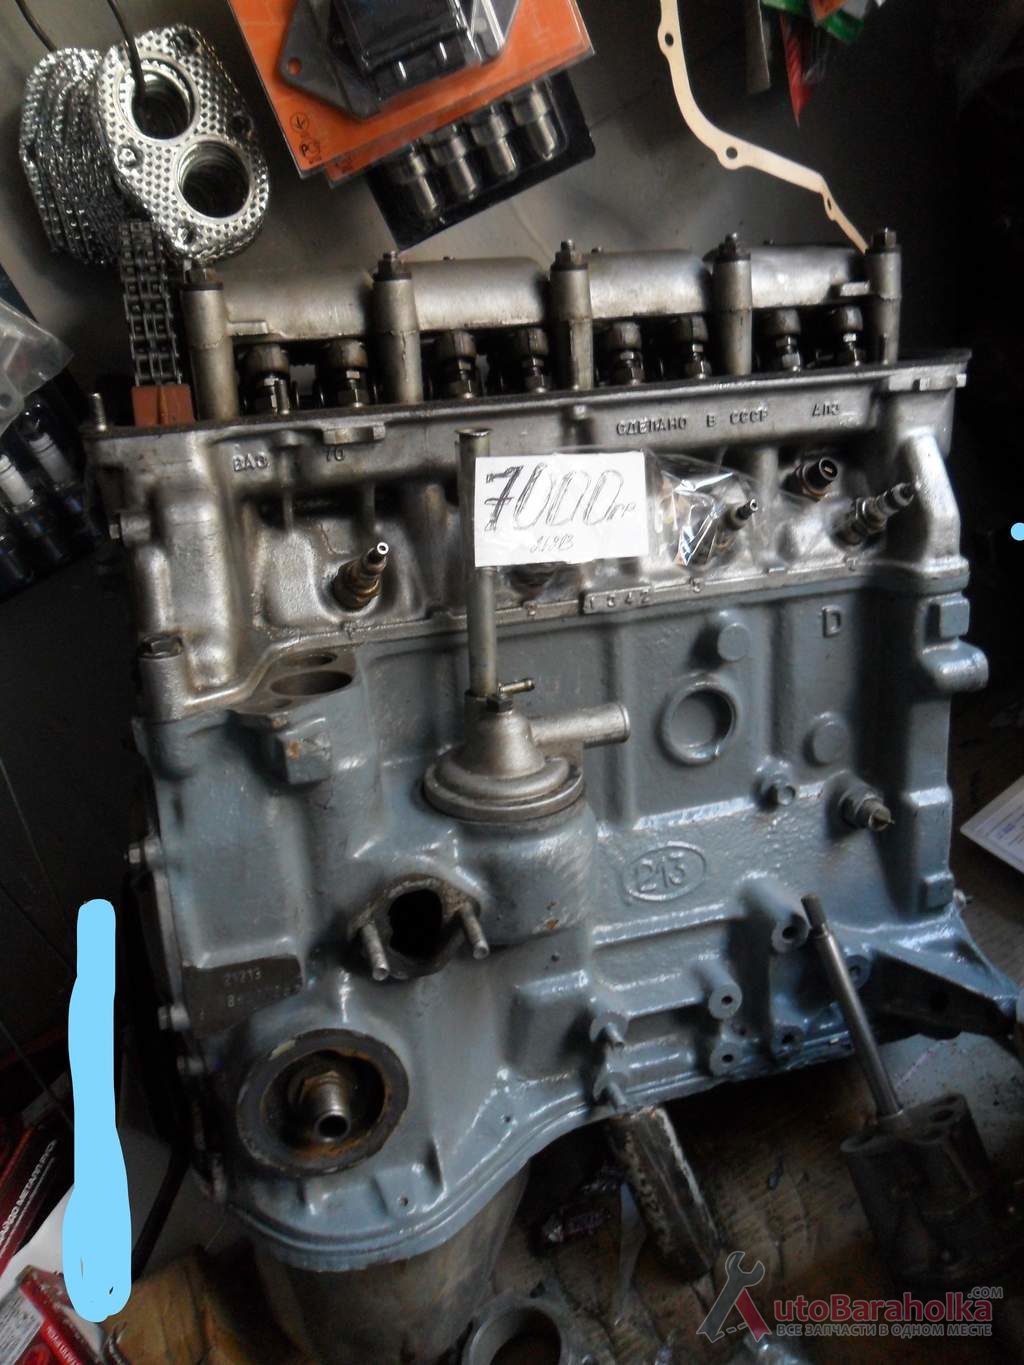 Продам Двигатель ВАЗ 21213 2121 нива 1.7 из-за границы. малый пробег. проверенный. высокая компрессия Херсон